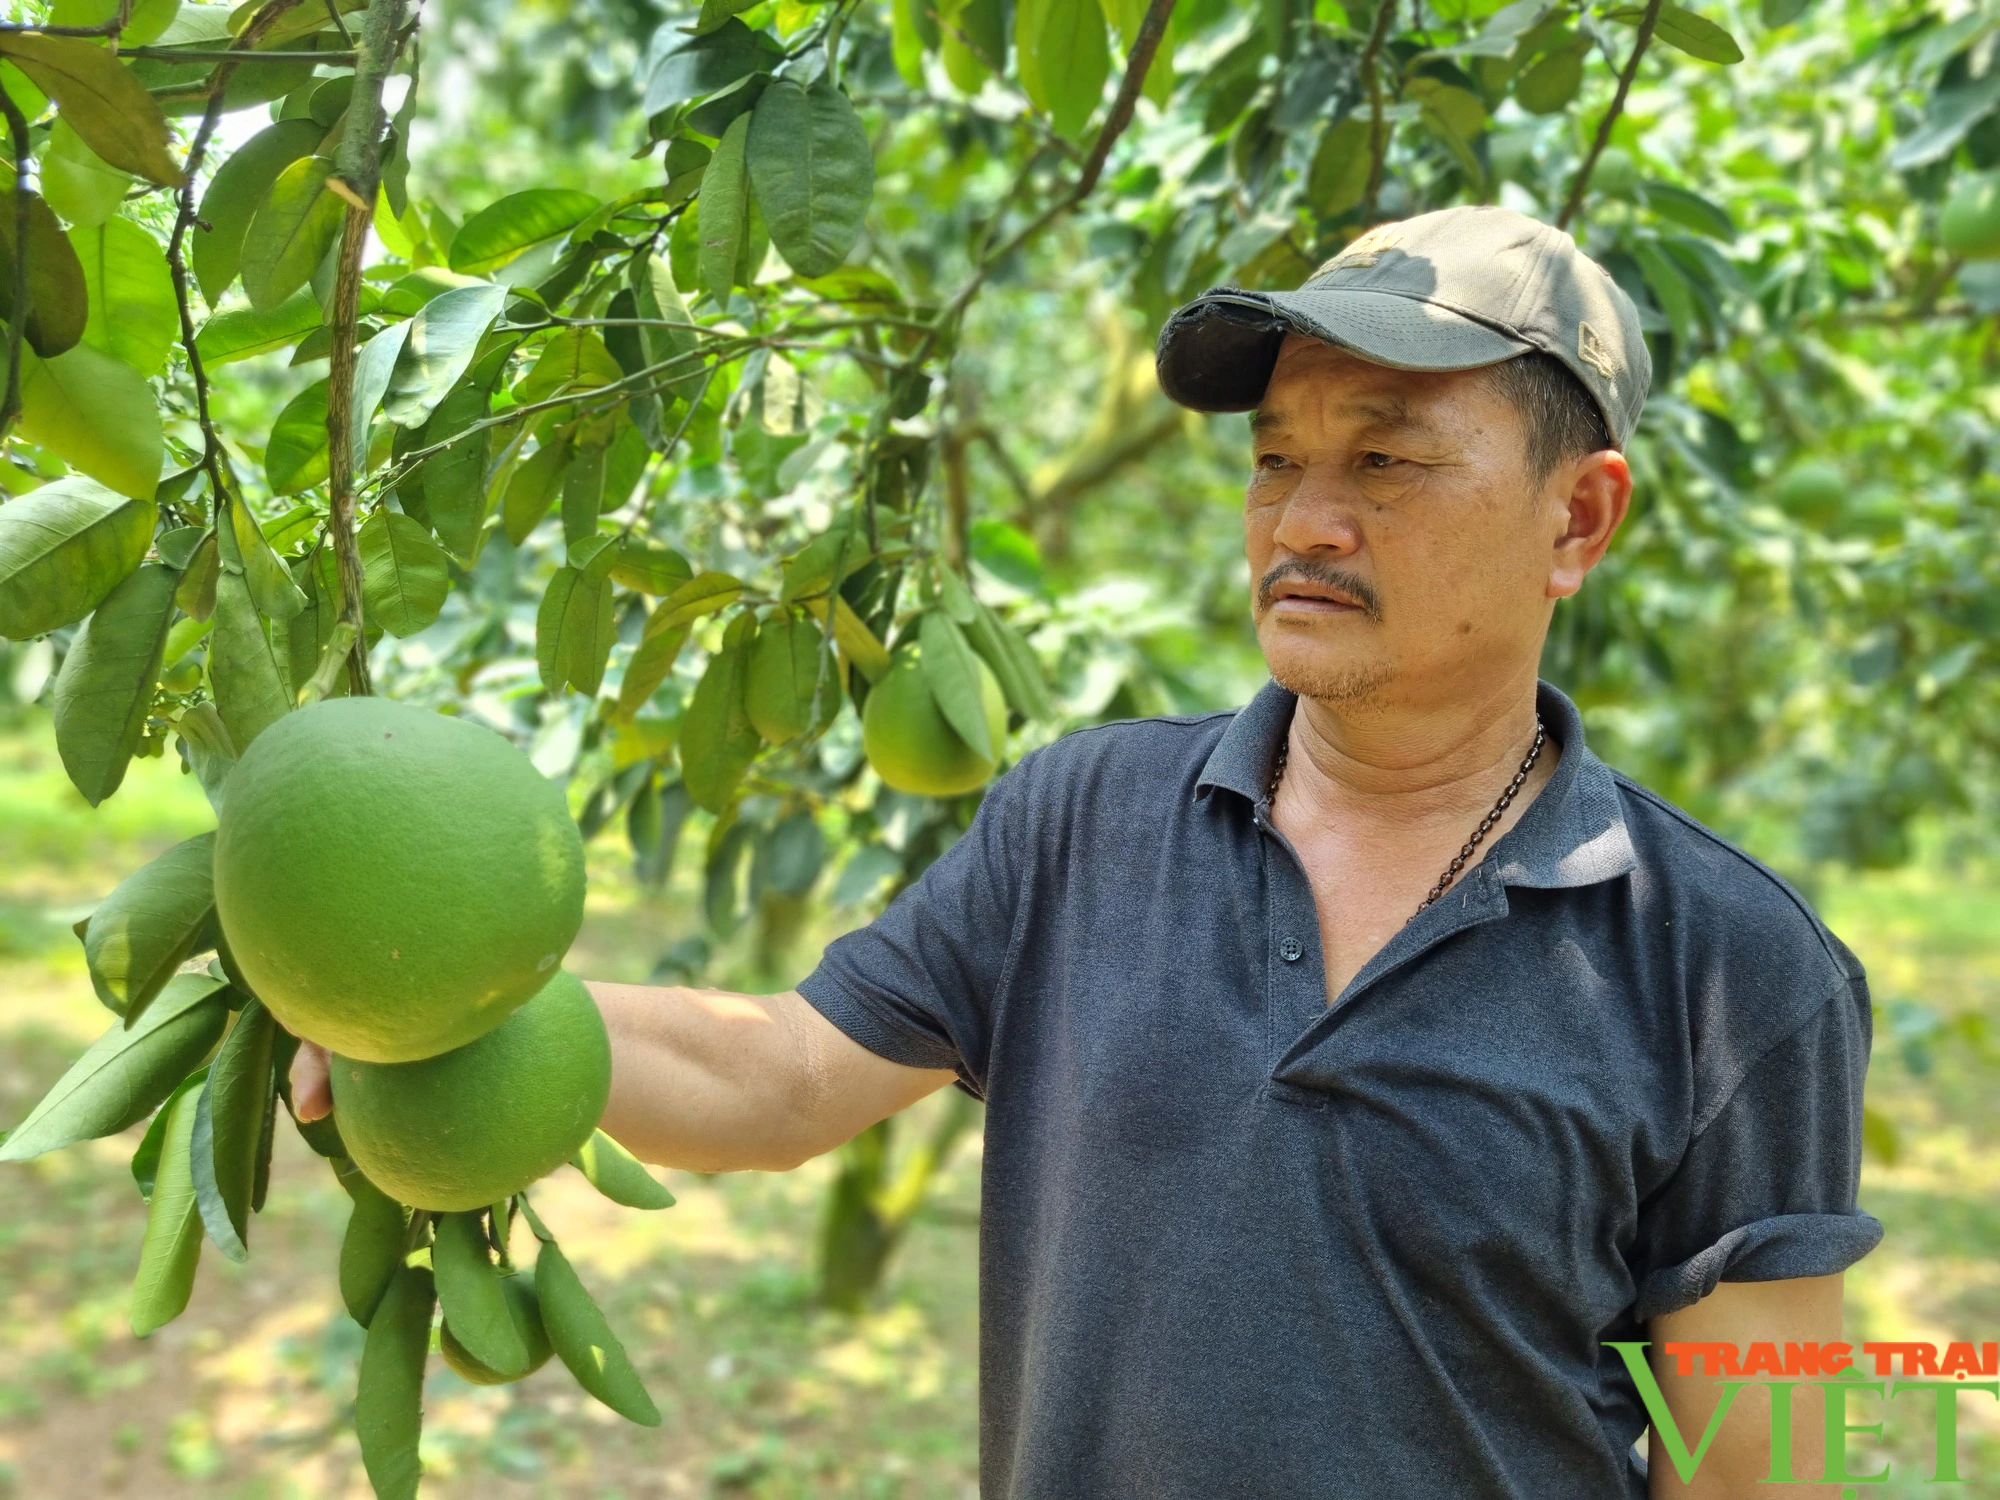 Quỹ Hỗ trợ nông dân giúp phát triển hợp tác xã nông nghiệp ở Hòa Bình - Ảnh 1.